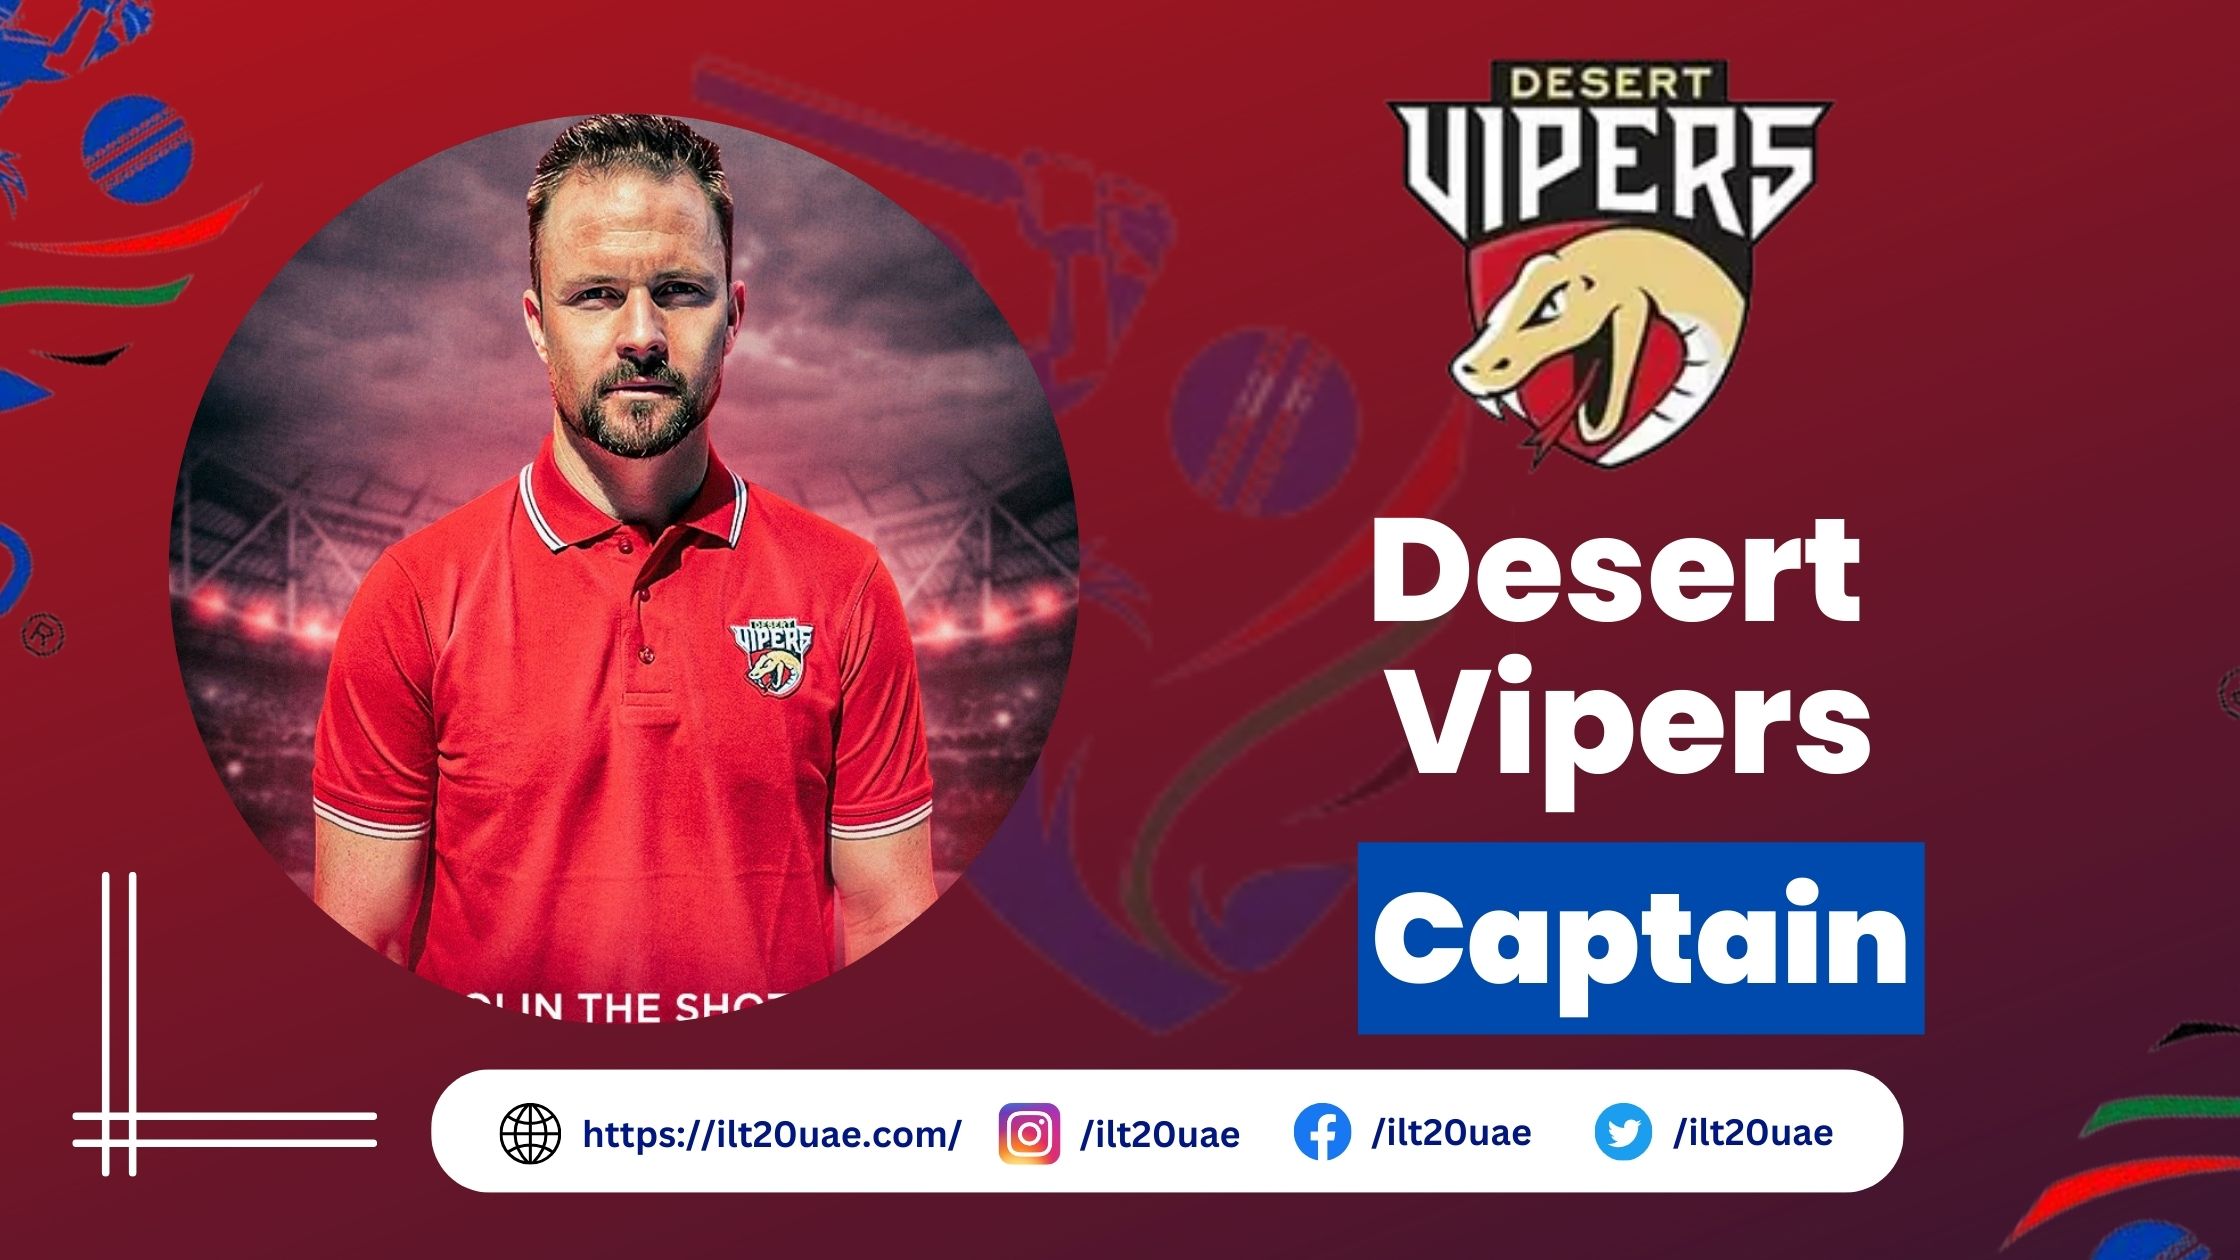 Desert Vipers captain